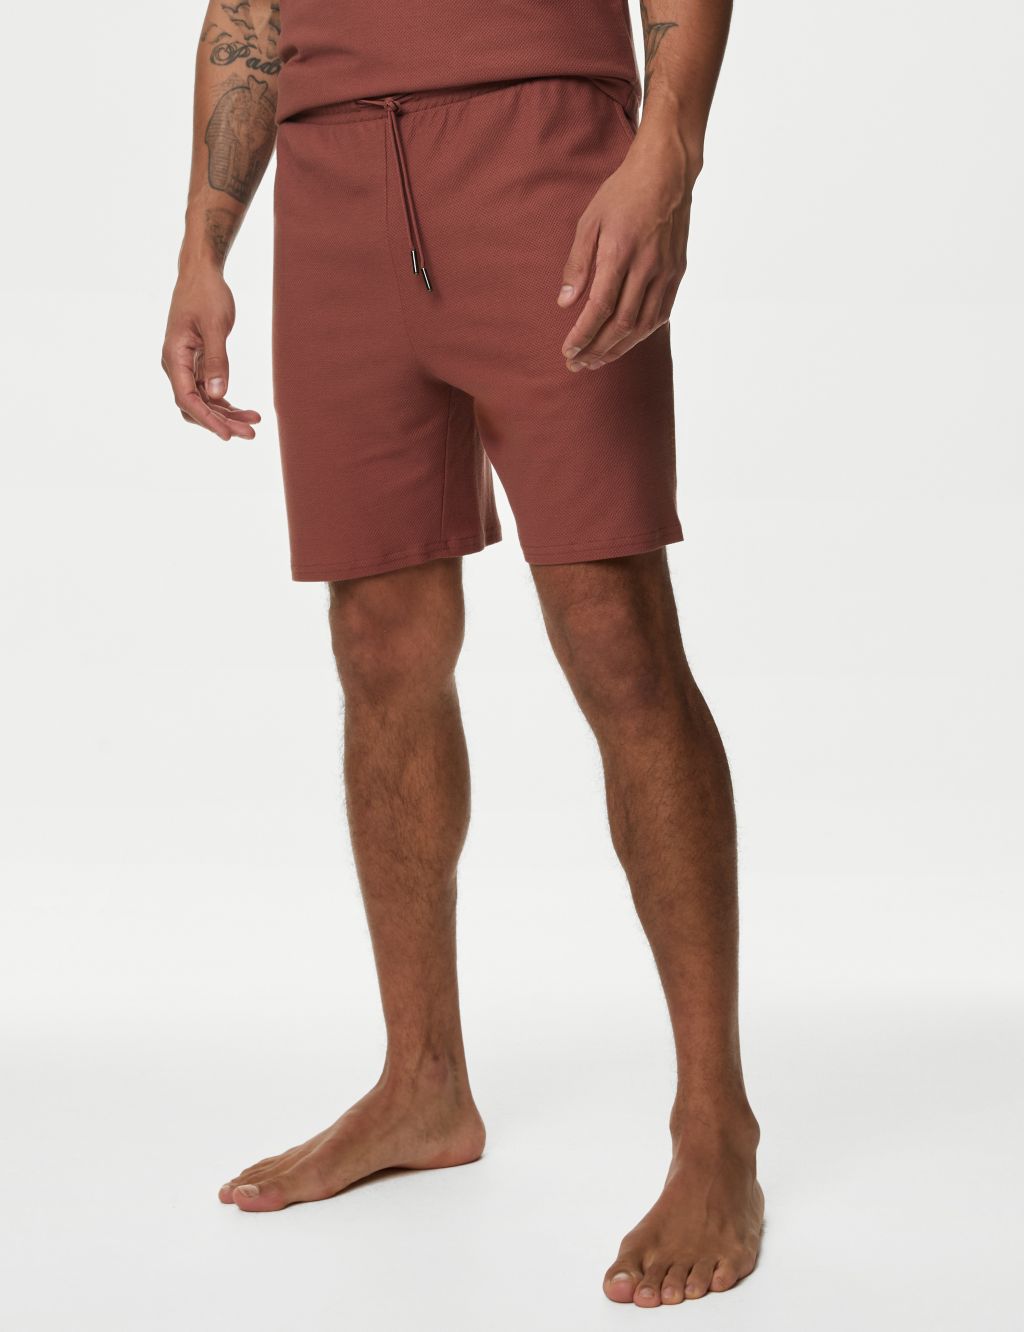 Supima® Cotton Blend Loungewear Shorts